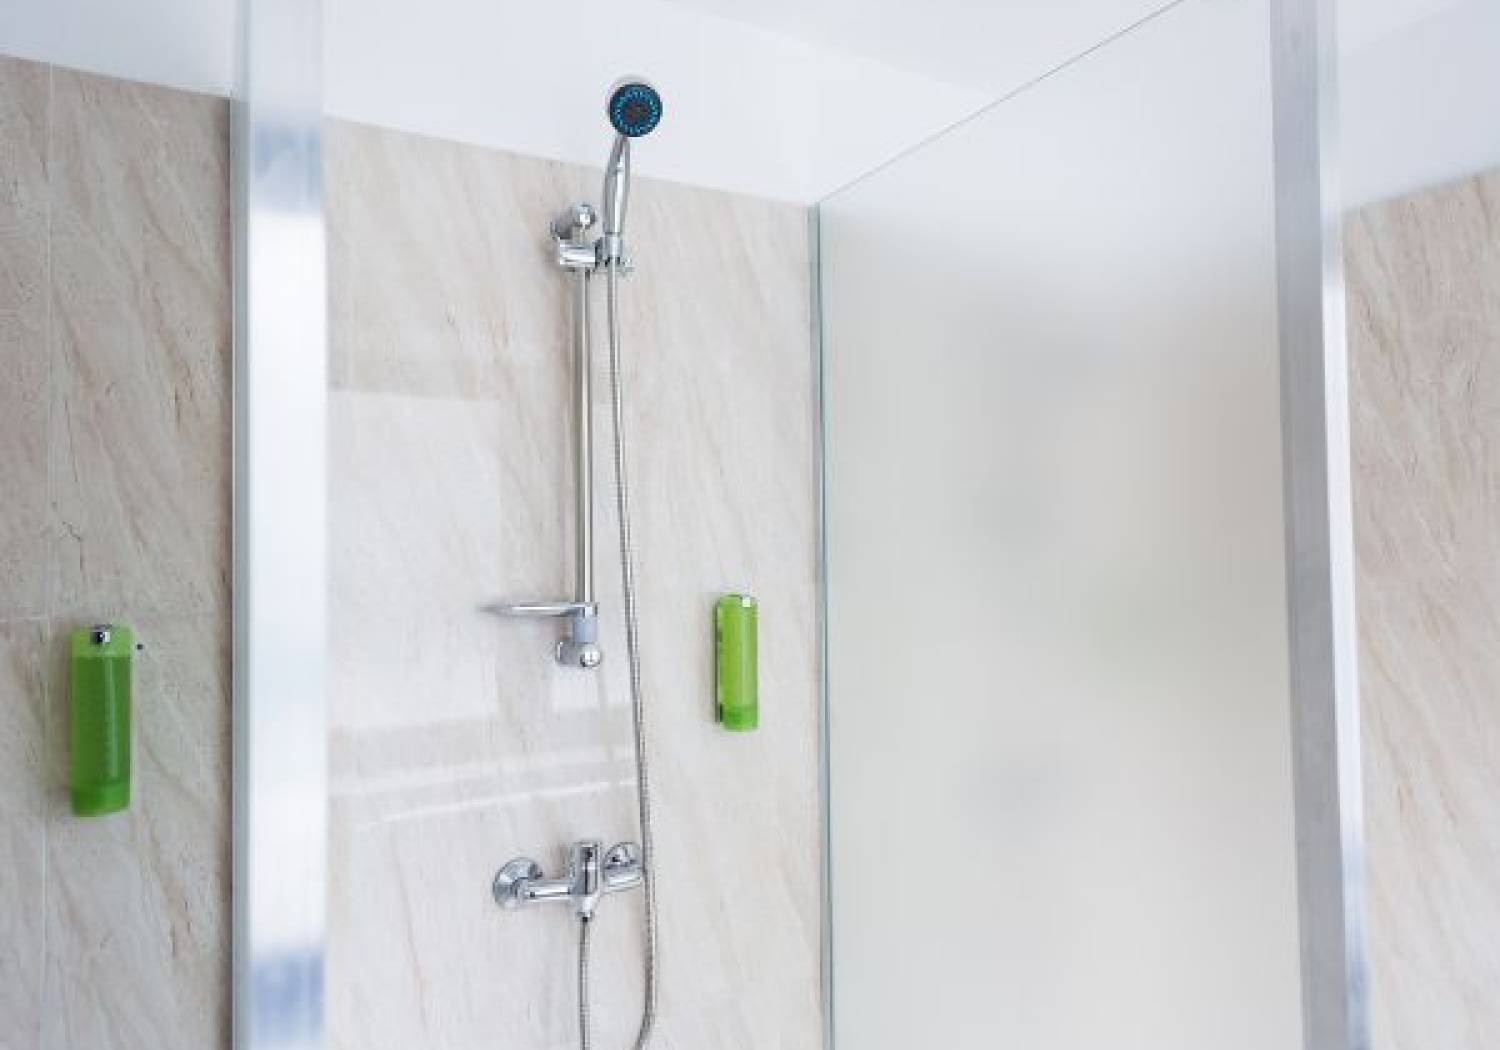 Kabiny prysznicowe - najnowsze trendy w aranżacji łazienki